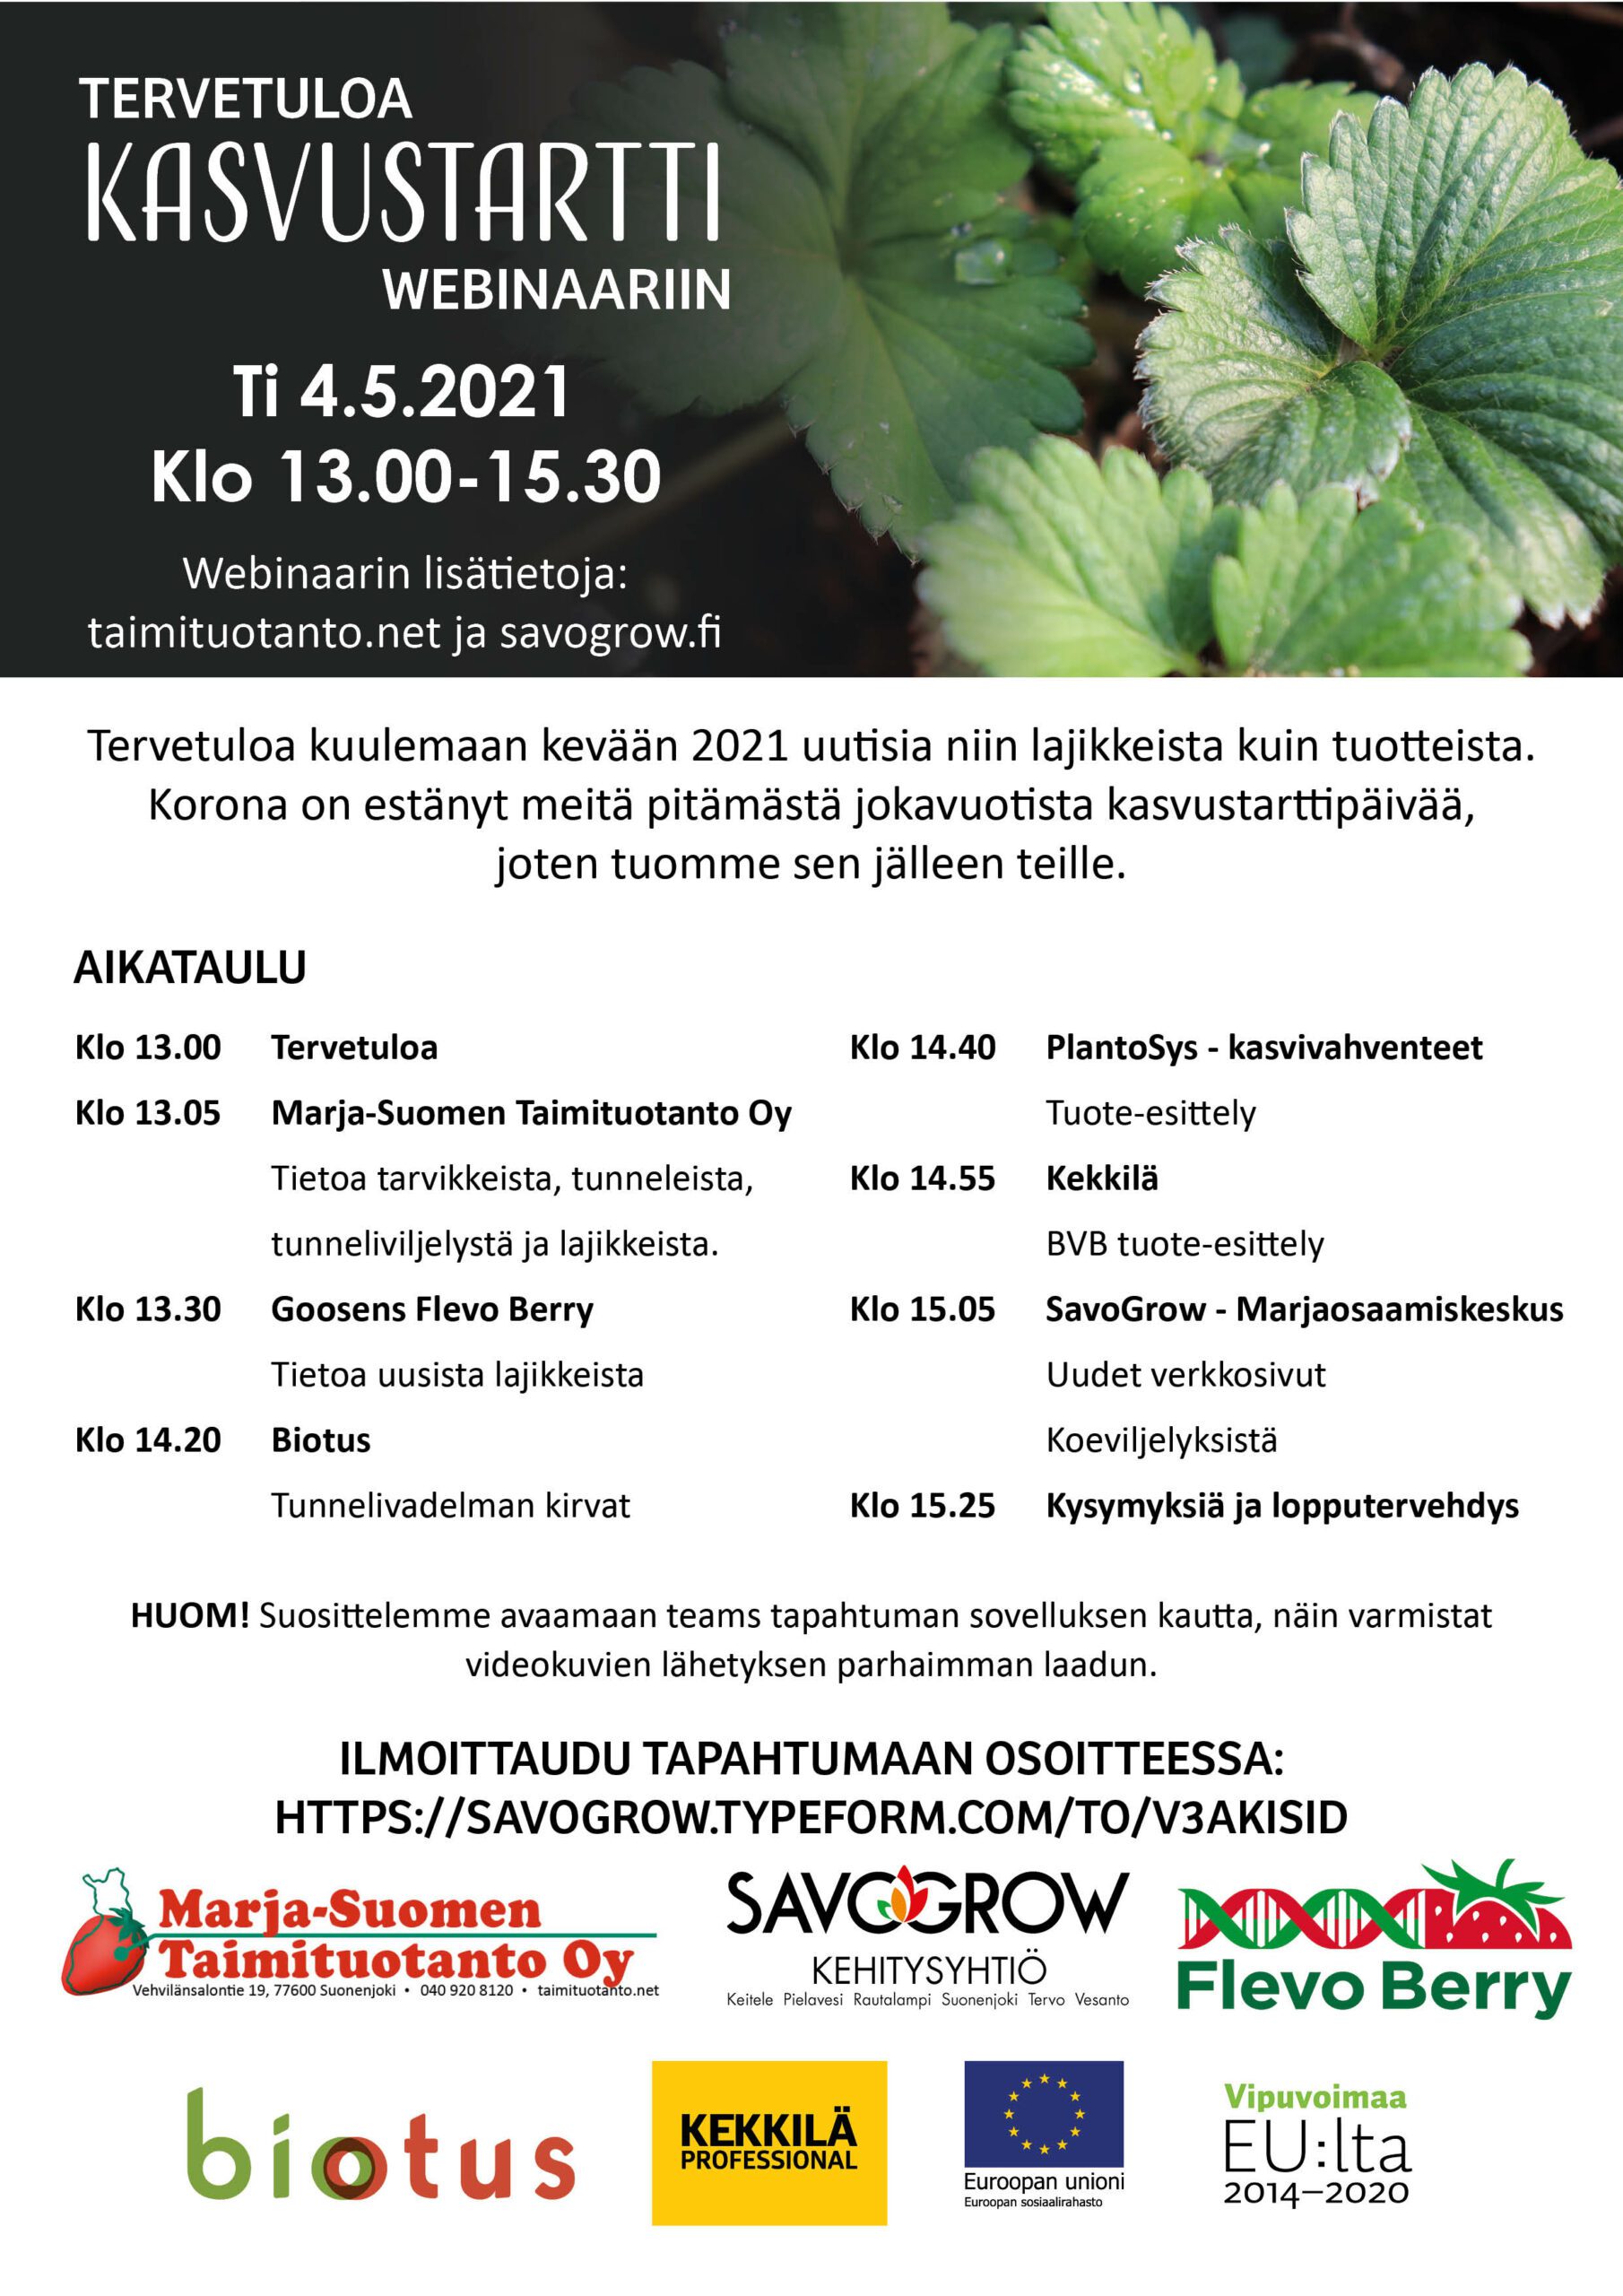 Kasvustartti 2021 – Marja-Suomen Taimituotanto